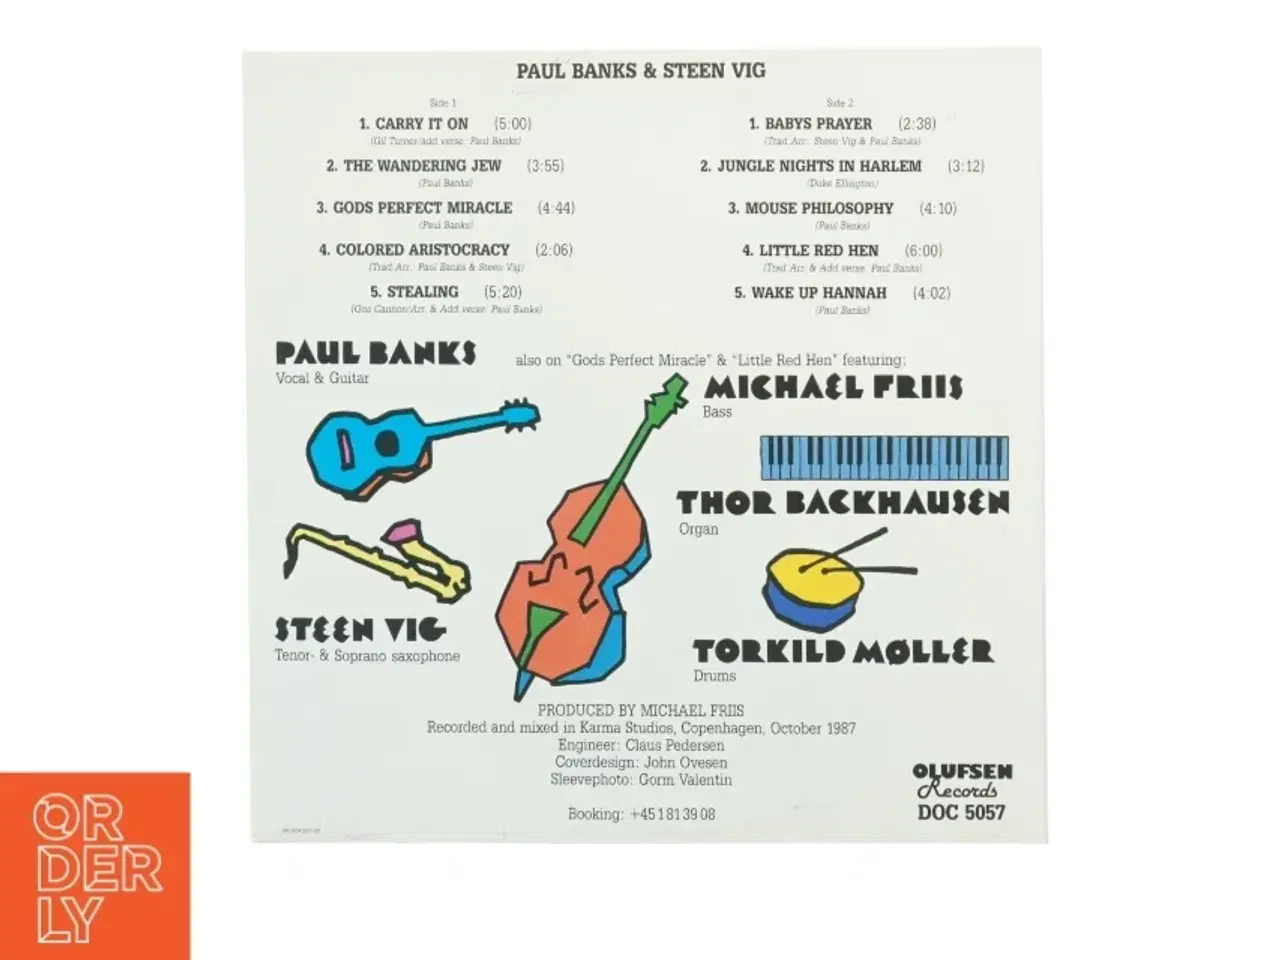 Billede 3 - Vinylplade af Paul Banks & Steen Vig (str. 31 x 31 cm)